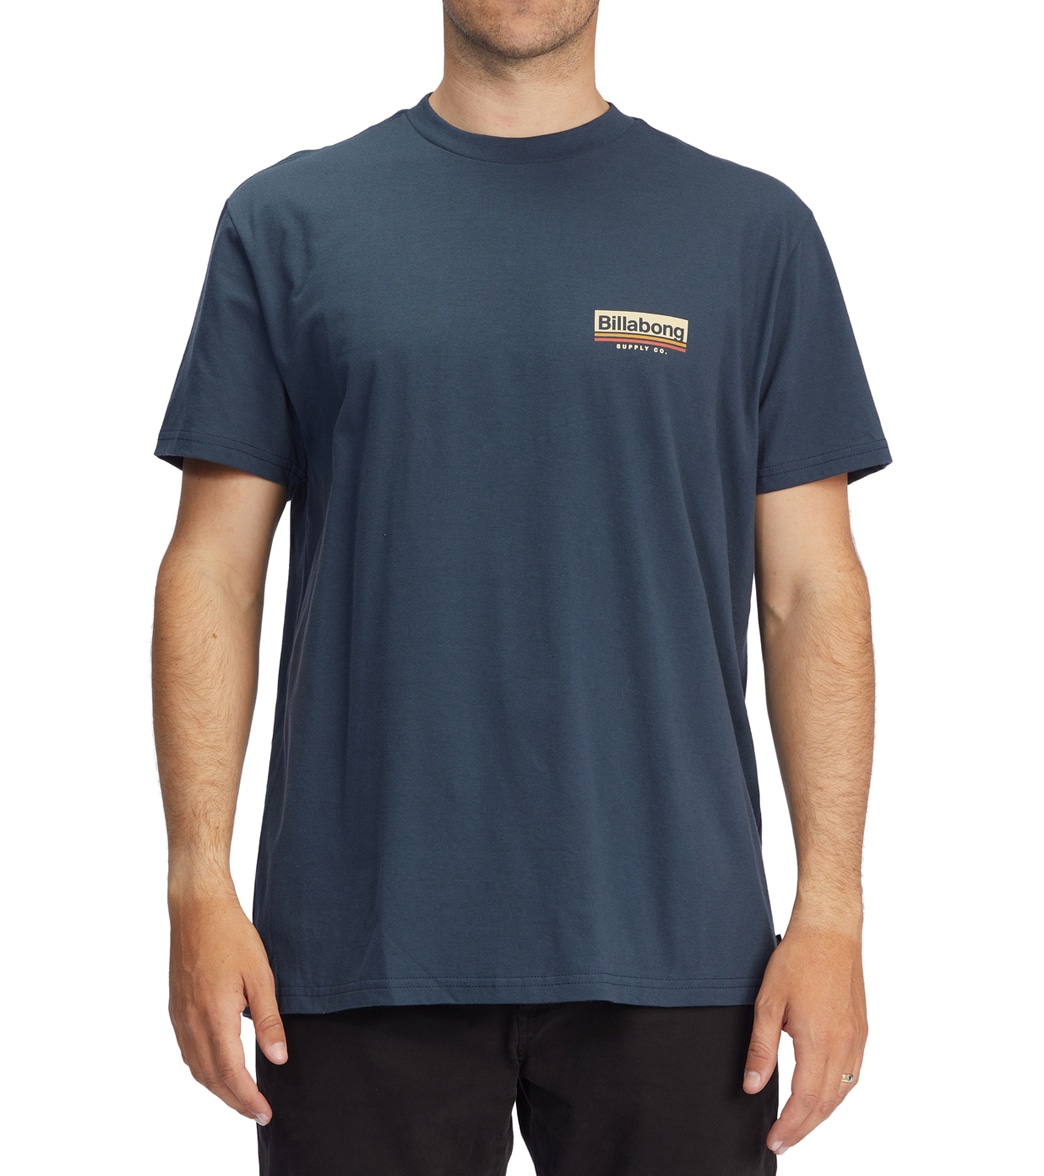 Billabong Men's Walled Short Sleeve Tee Shirt - Navy Large Cotton - Swimoutlet.com